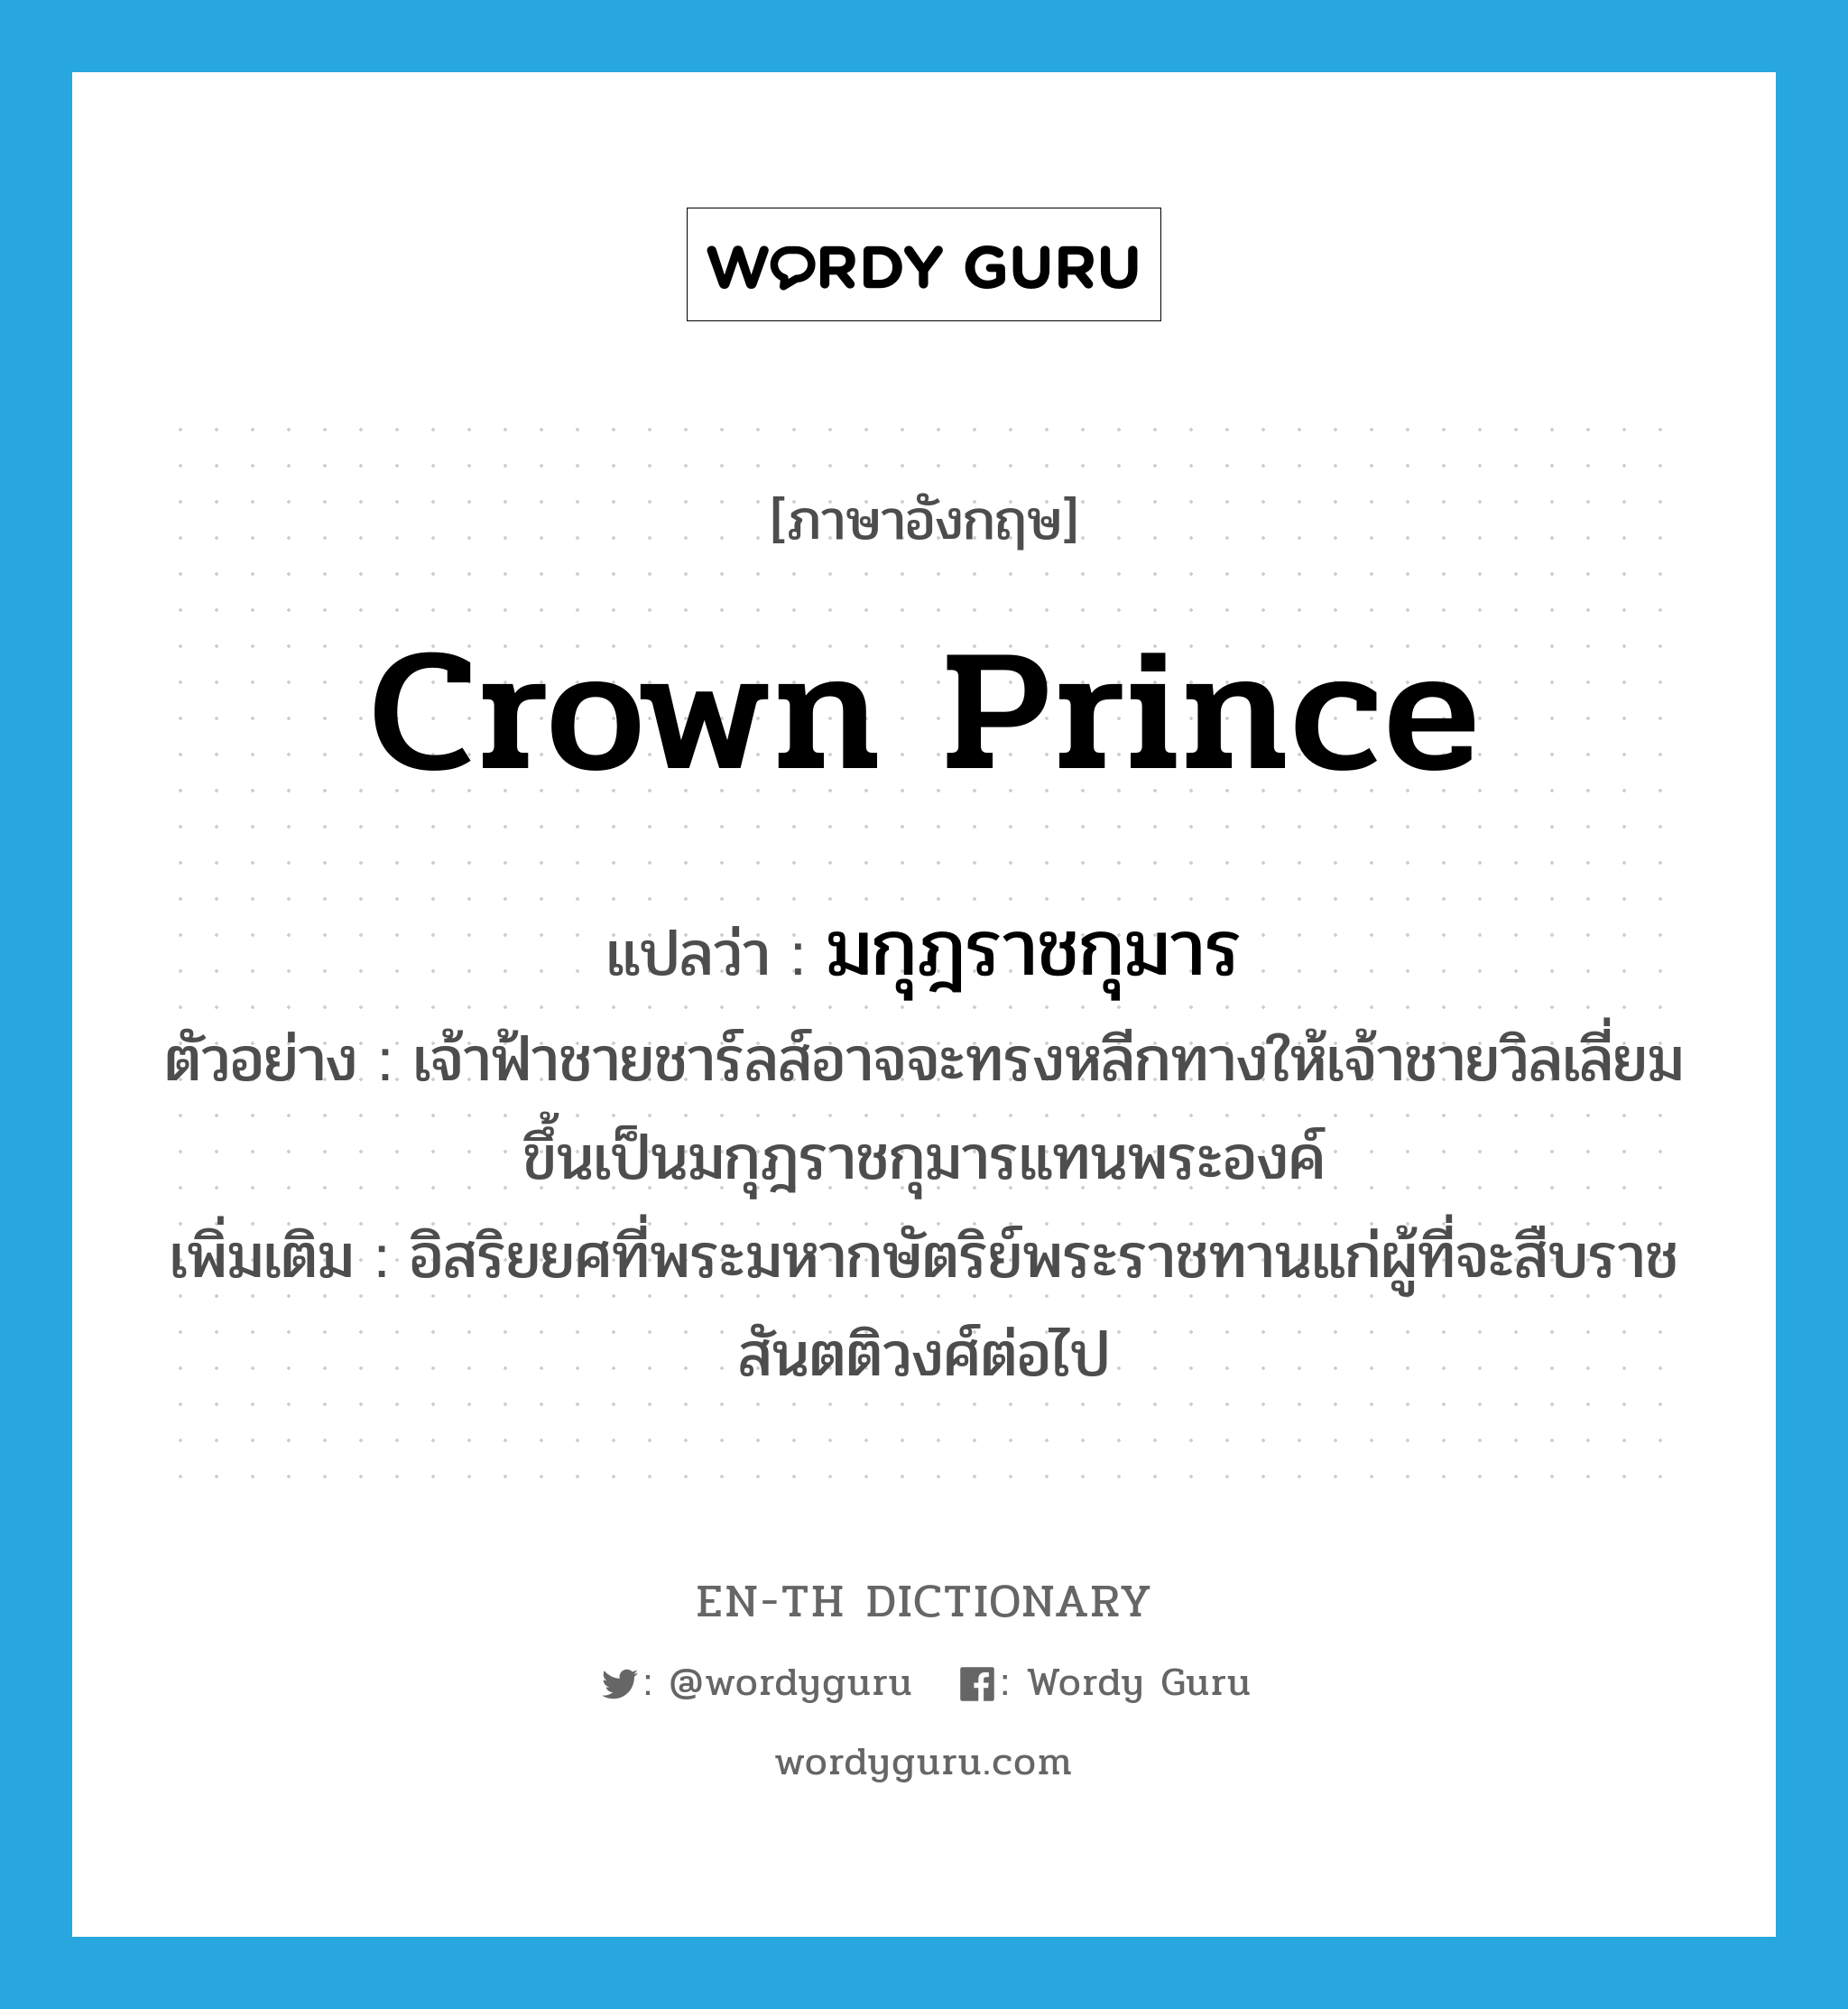 crown prince แปลว่า?, คำศัพท์ภาษาอังกฤษ crown prince แปลว่า มกุฎราชกุมาร ประเภท N ตัวอย่าง เจ้าฟ้าชายชาร์ลส์อาจจะทรงหลีกทางให้เจ้าชายวิลเลี่ยมขึ้นเป็นมกุฎราชกุมารแทนพระองค์ เพิ่มเติม อิสริยยศที่พระมหากษัตริย์พระราชทานแก่ผู้ที่จะสืบราชสันตติวงศ์ต่อไป หมวด N